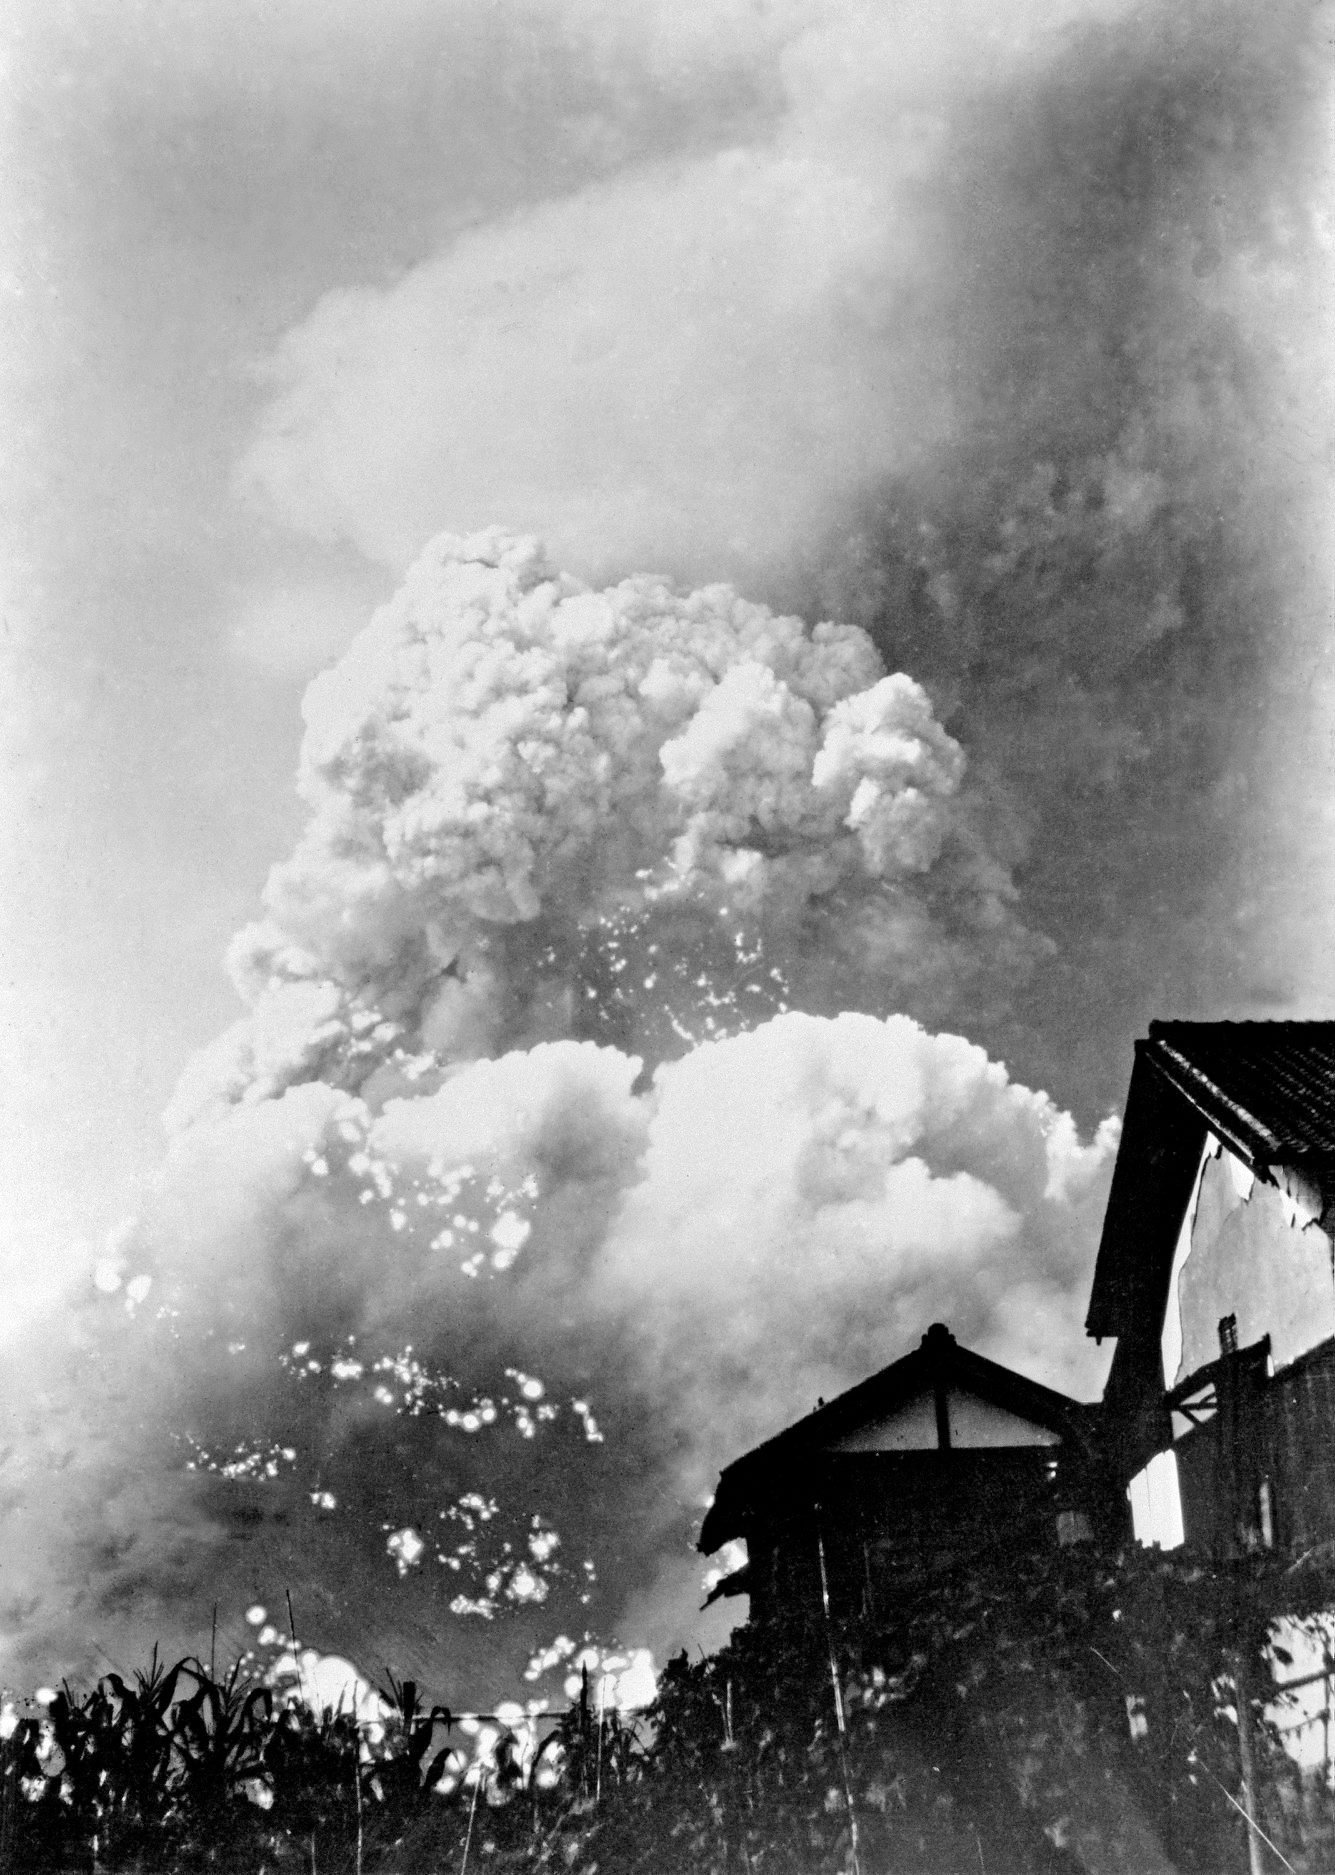 Hiroshima by Yoshito Matsushige, 1945